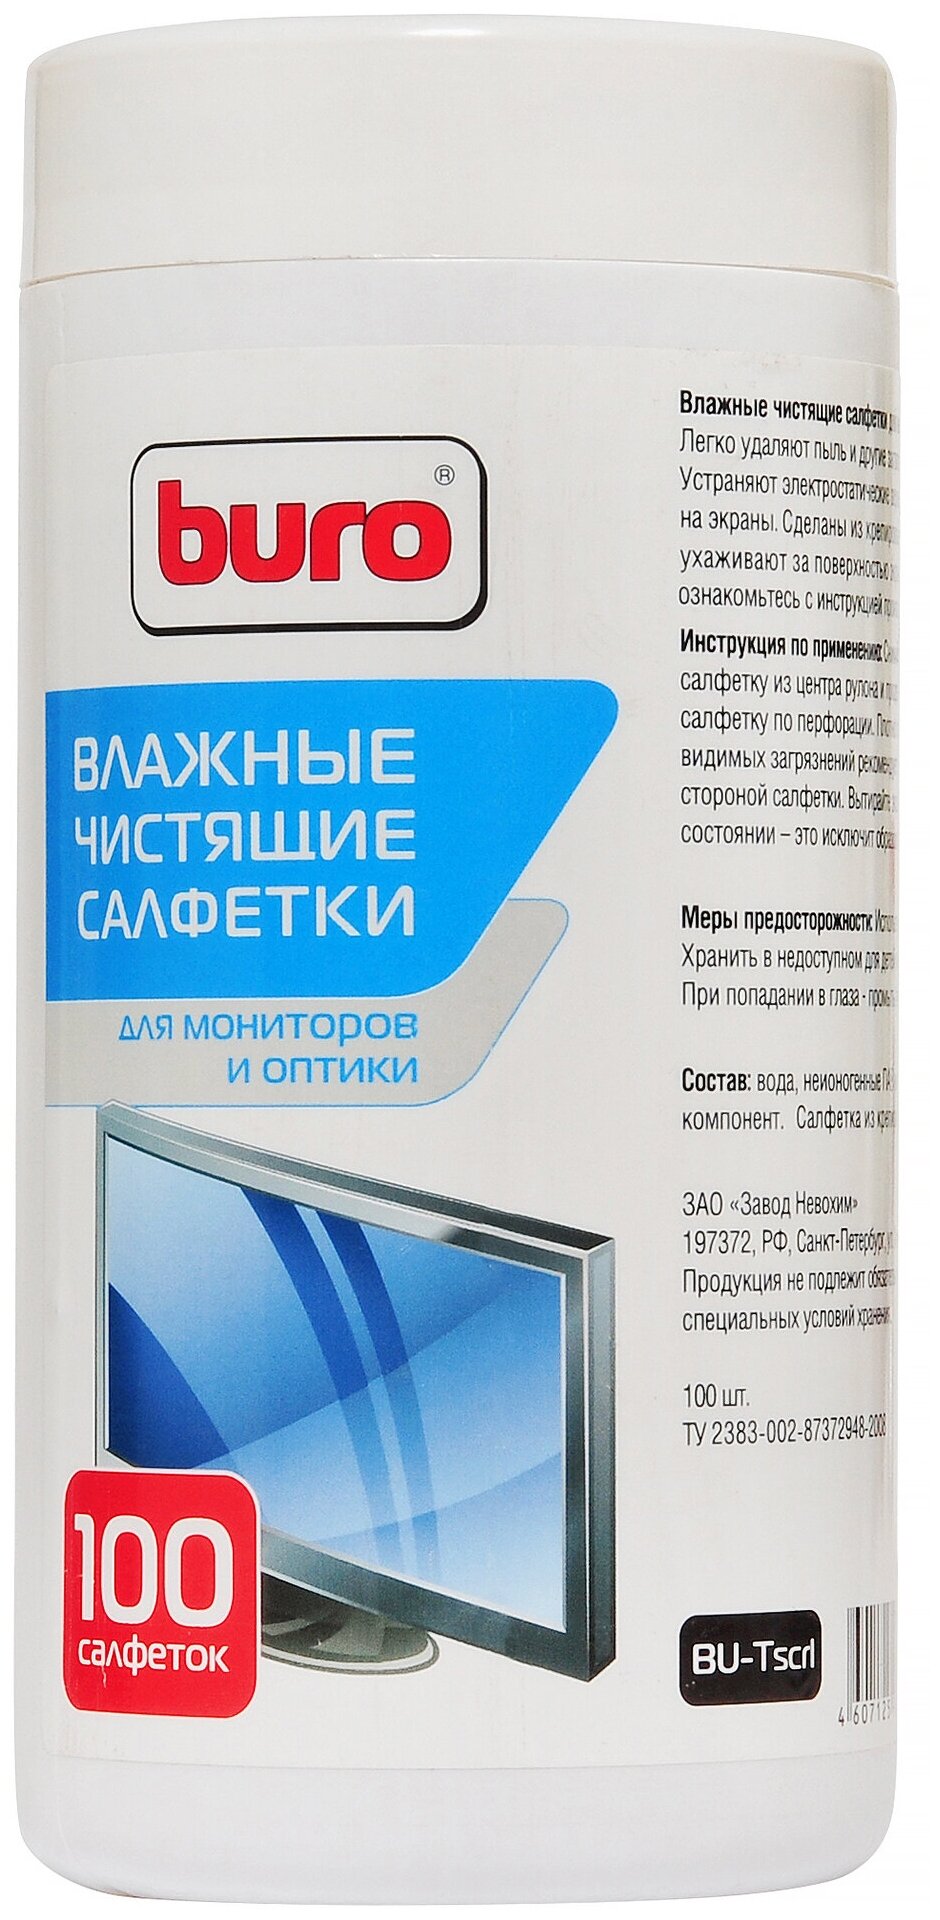 Buro BU-Tscrl влажные салфетки 100 шт. для экрана